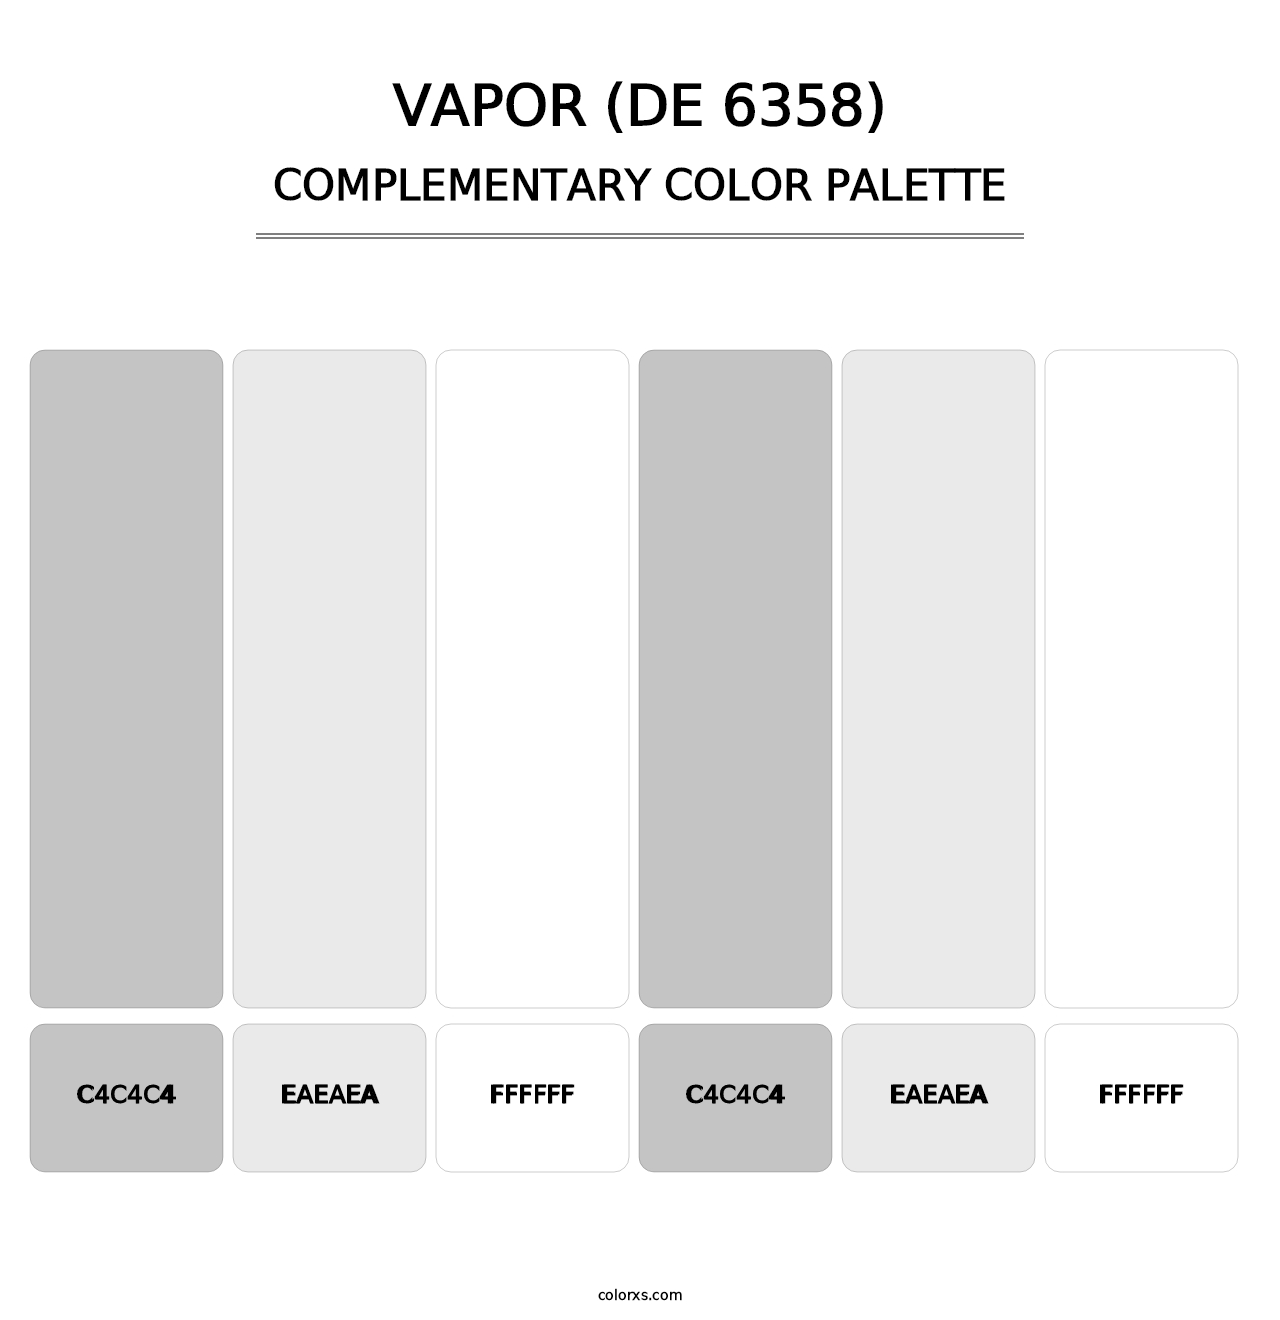 Vapor (DE 6358) - Complementary Color Palette